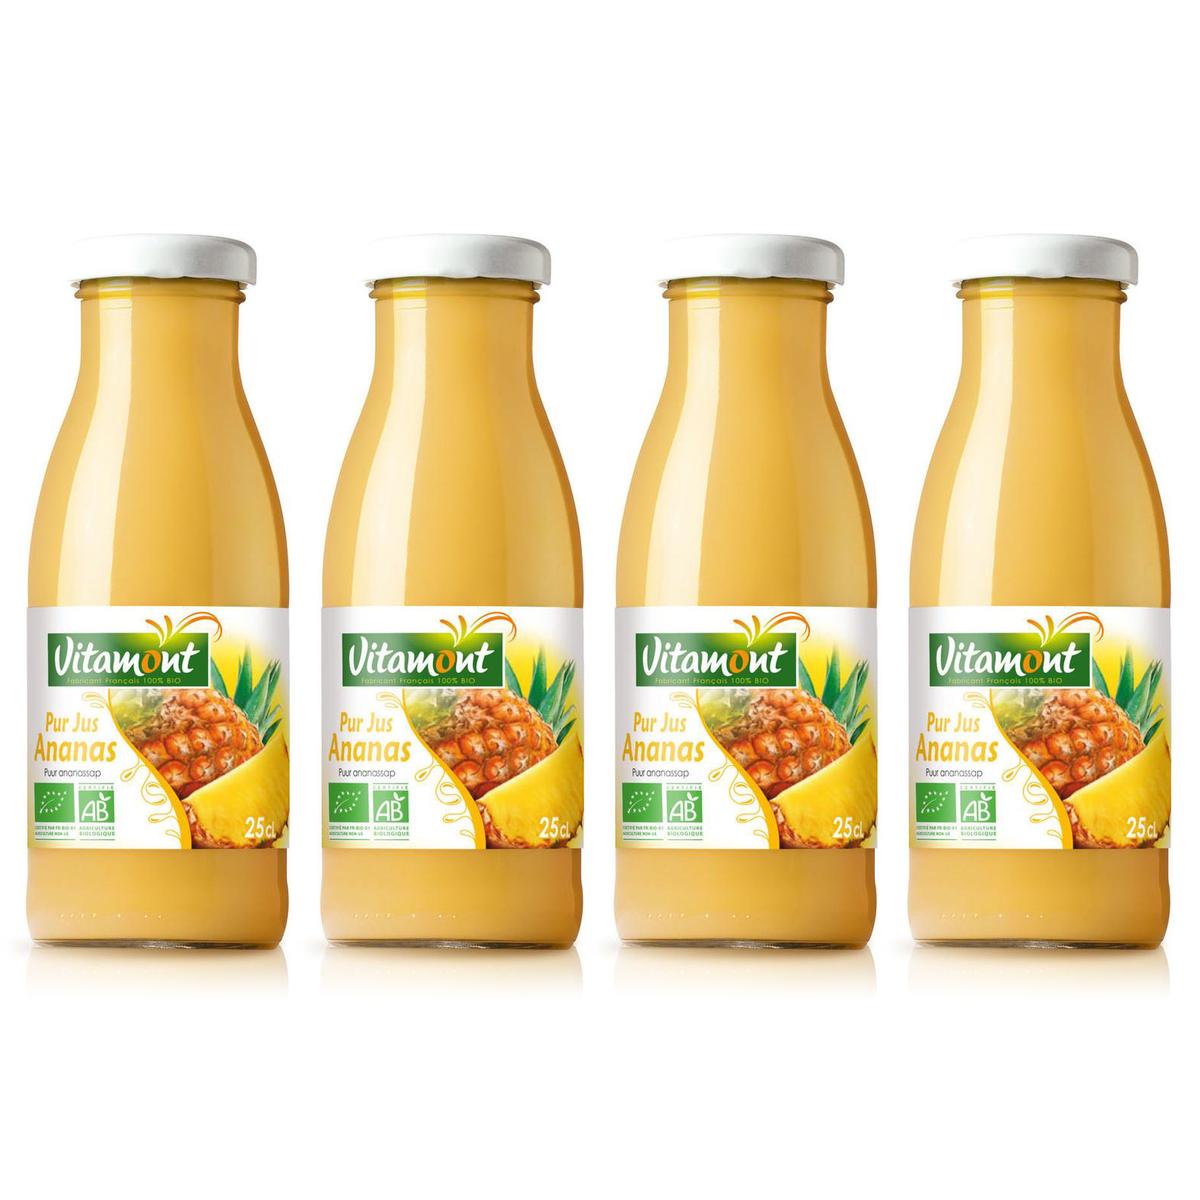 Acheter Promotion Vitamont Mini pur jus d'ananas Bio, Lot de 4x25cl